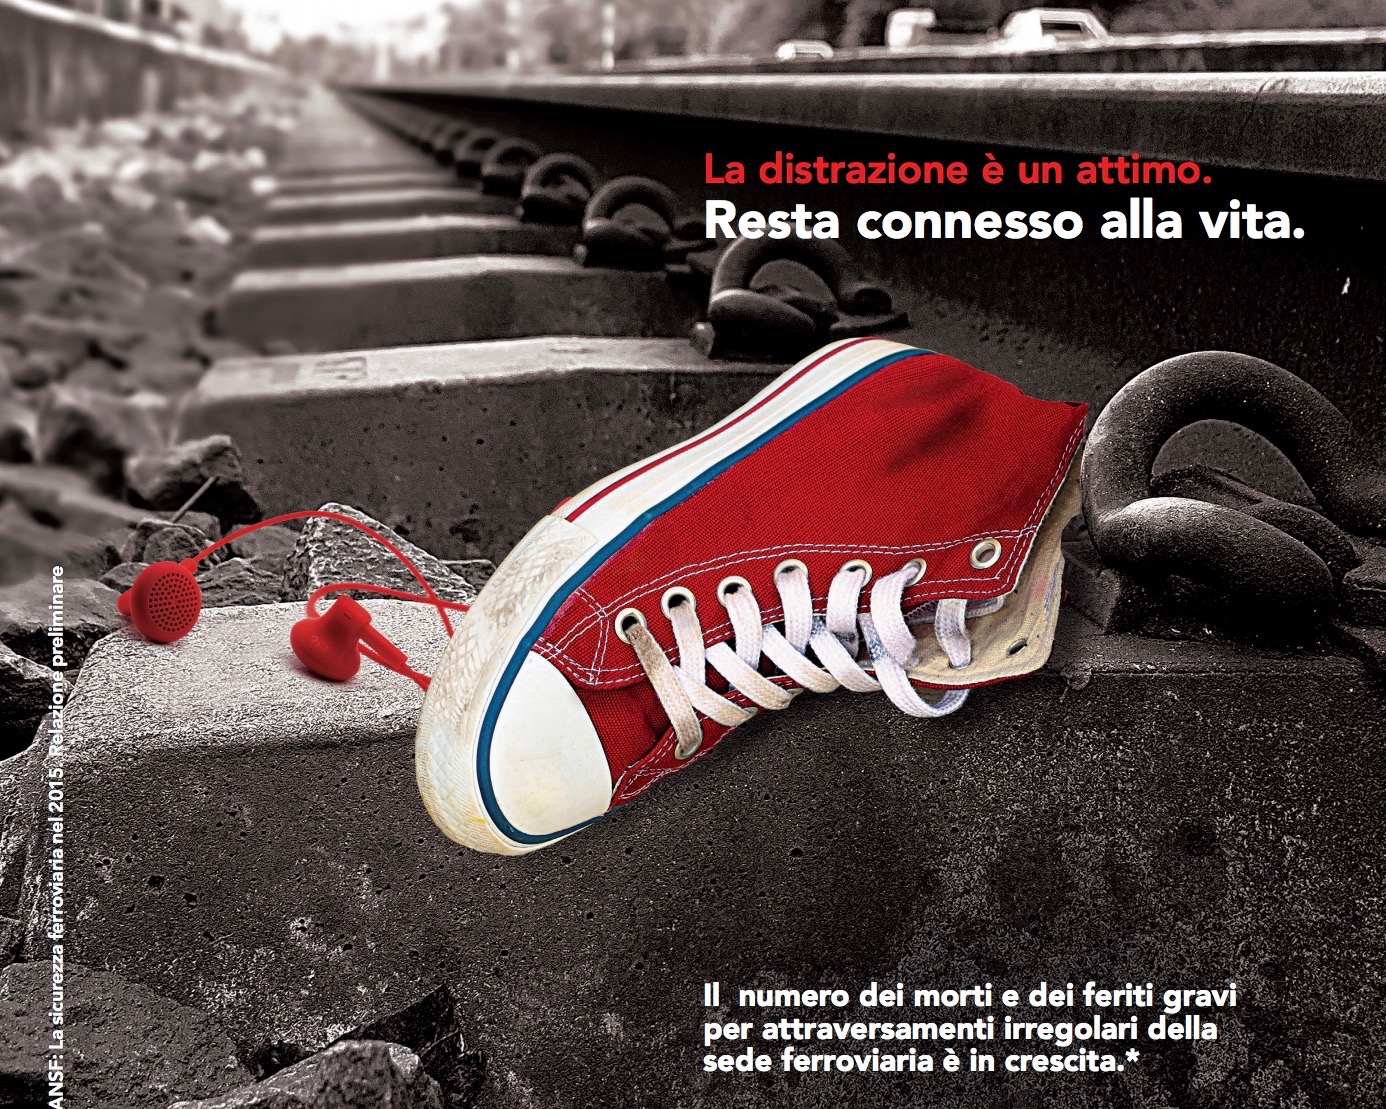 Torino: al via la campagna Gtt per prevenire gli incidenti nelle stazioni ferroviarie